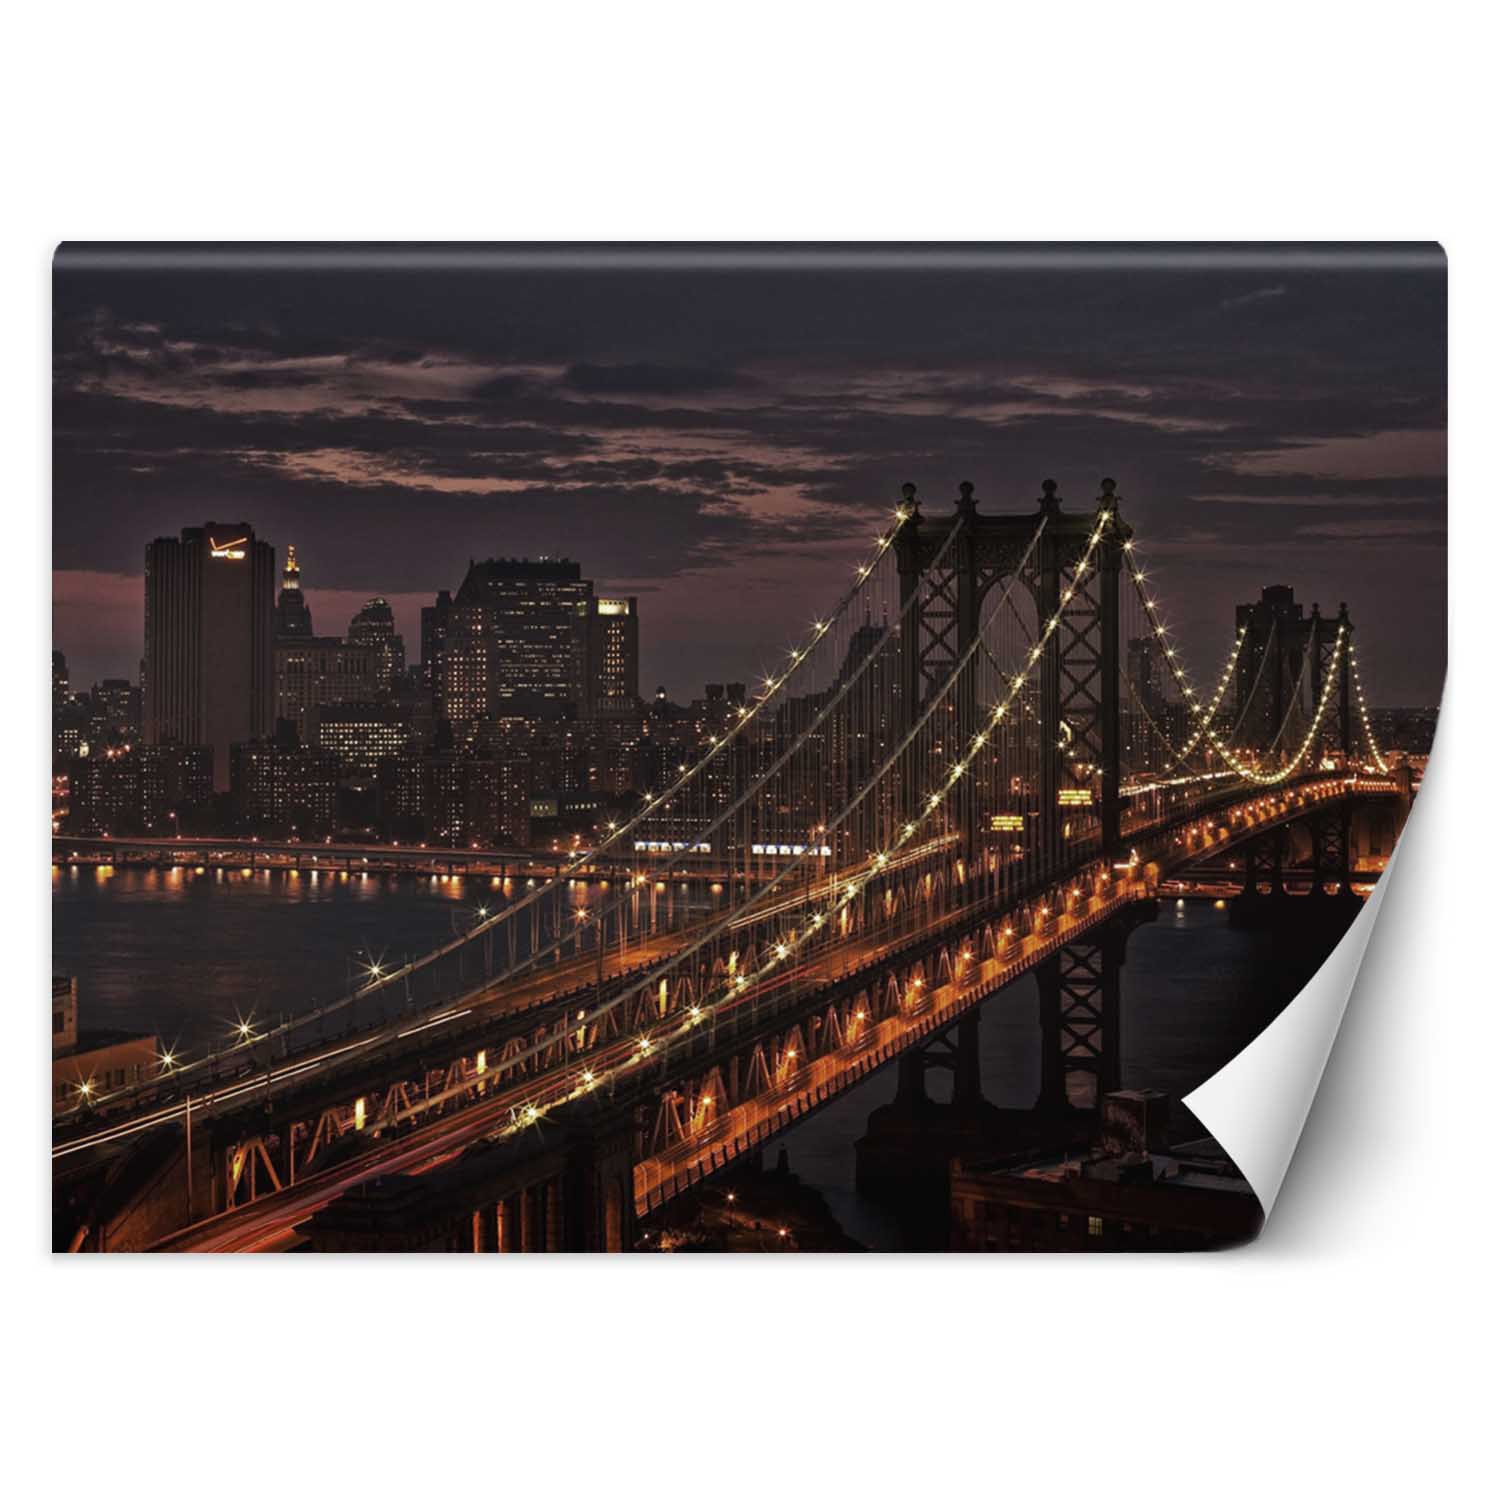 Trend24 – Behang – New York City Bridge – Vliesbehang – Fotobehang – Behang Woonkamer – 450×315 cm – Incl. behanglijm